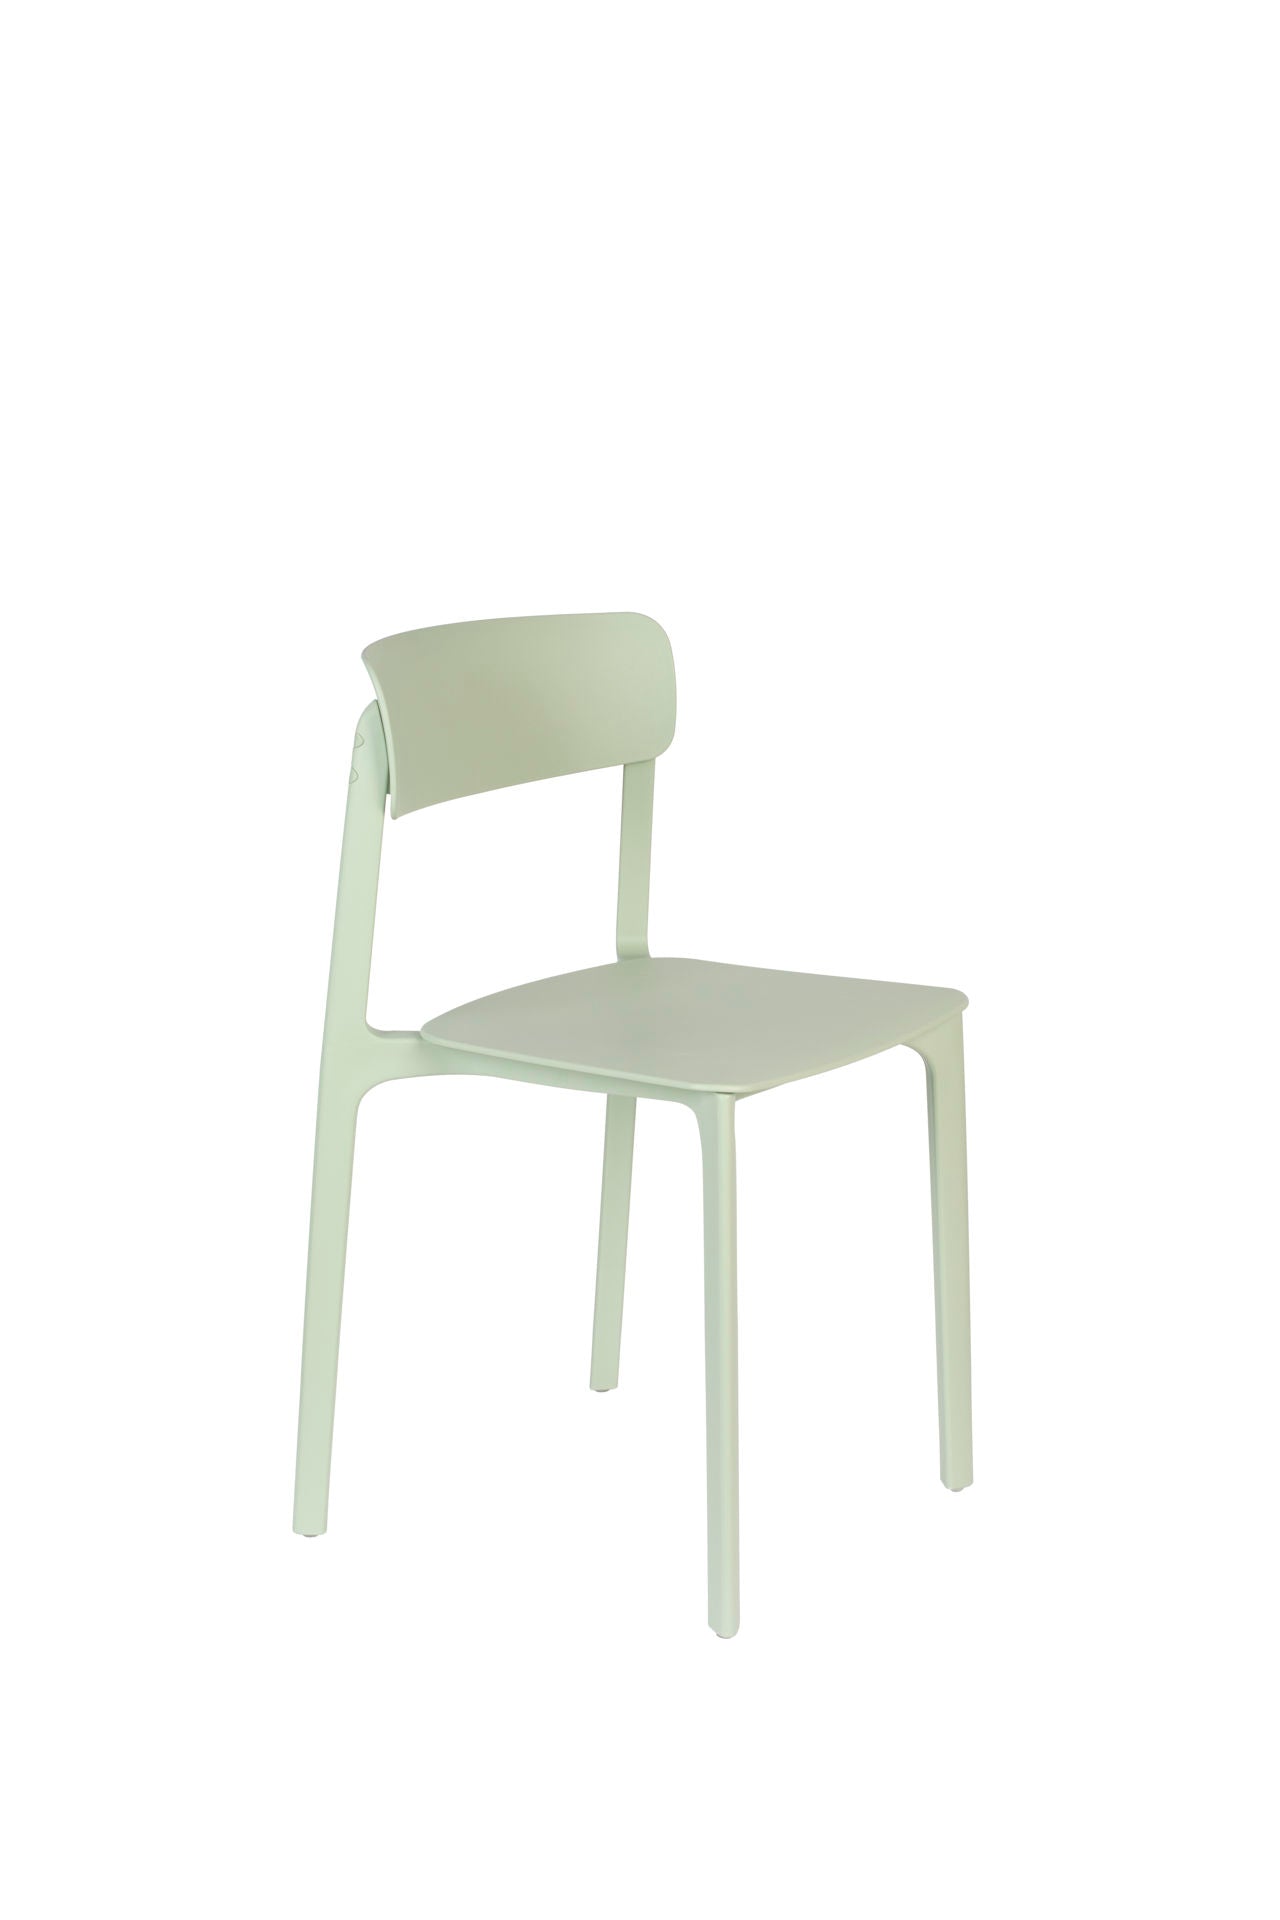 Nancy's Farmville Chair - Rétro - Vert - Polypropylène, Plastique - 47 cm x 48 cm x 94 cm